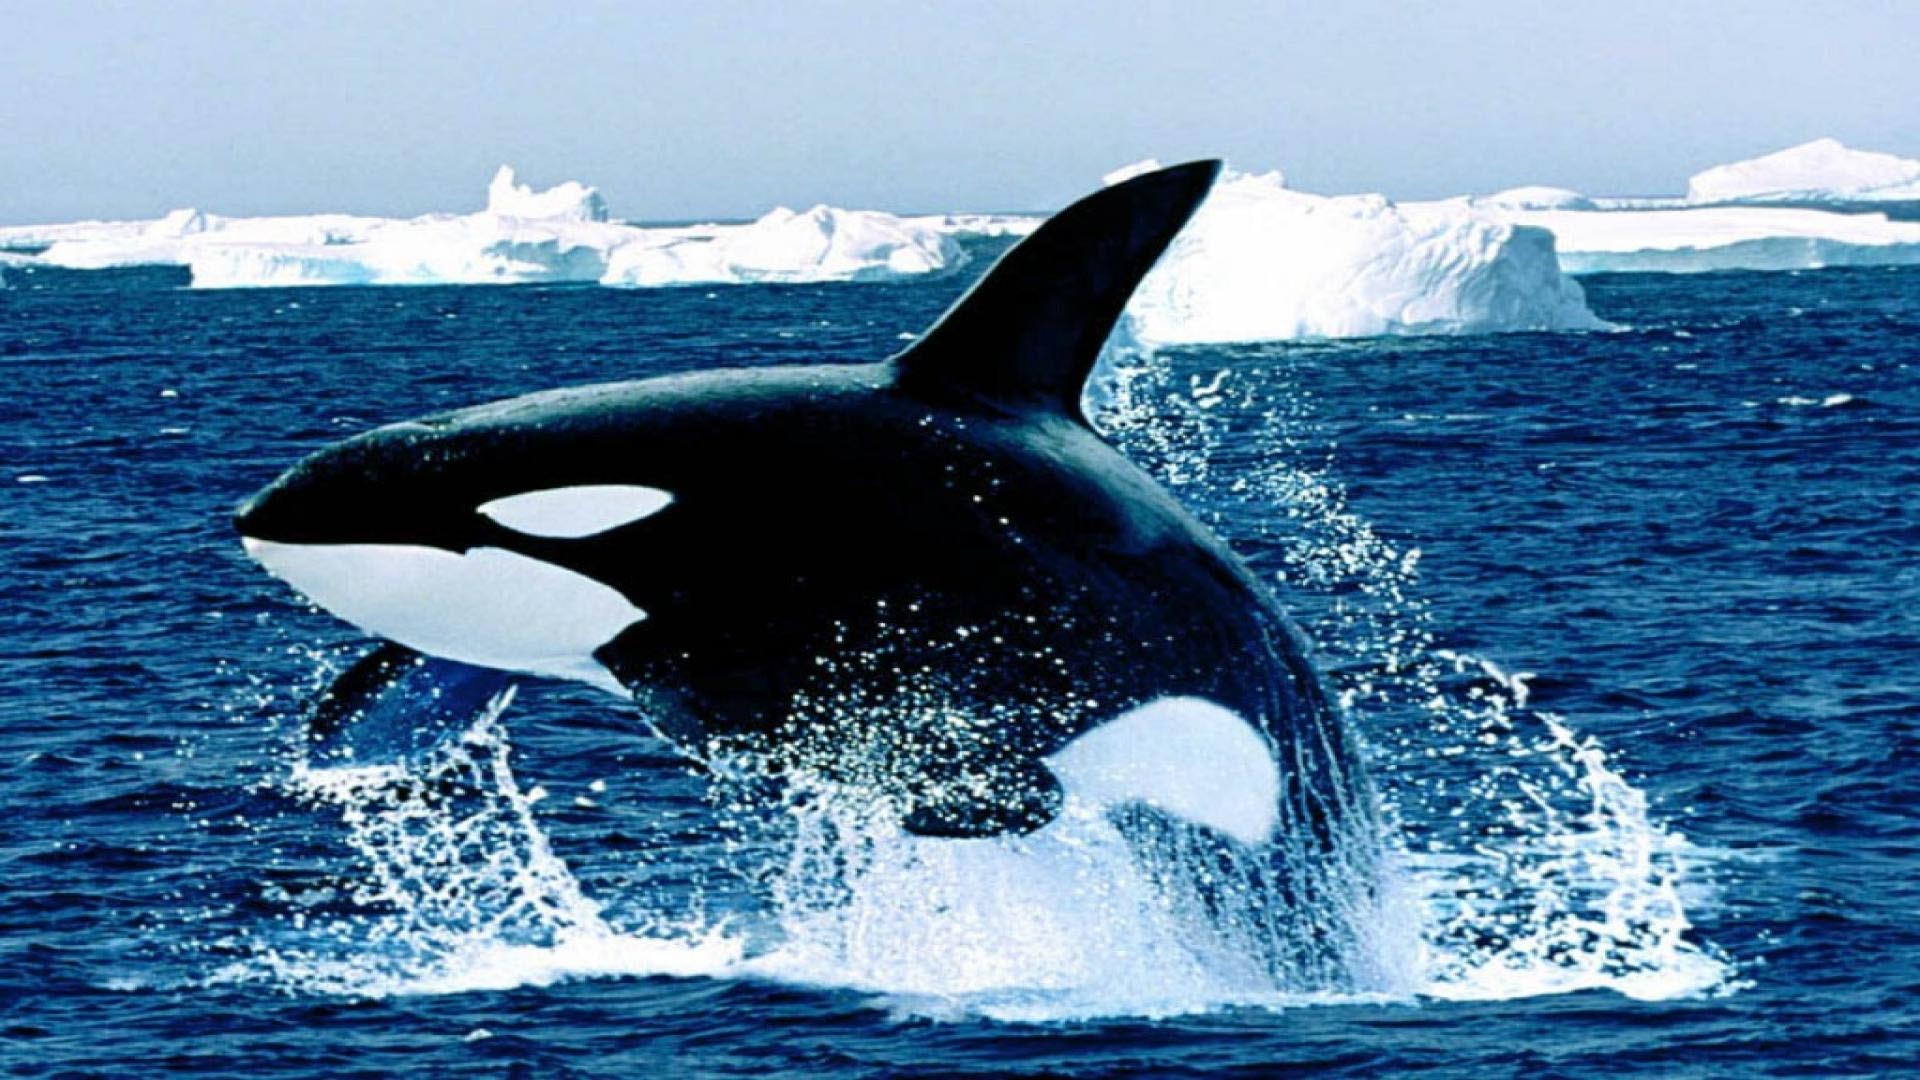 Ya ha sido descargada por más de 33 mil usuarios, quienes pueden colaborar informando los avistamientos de ballenas en todo el mundo